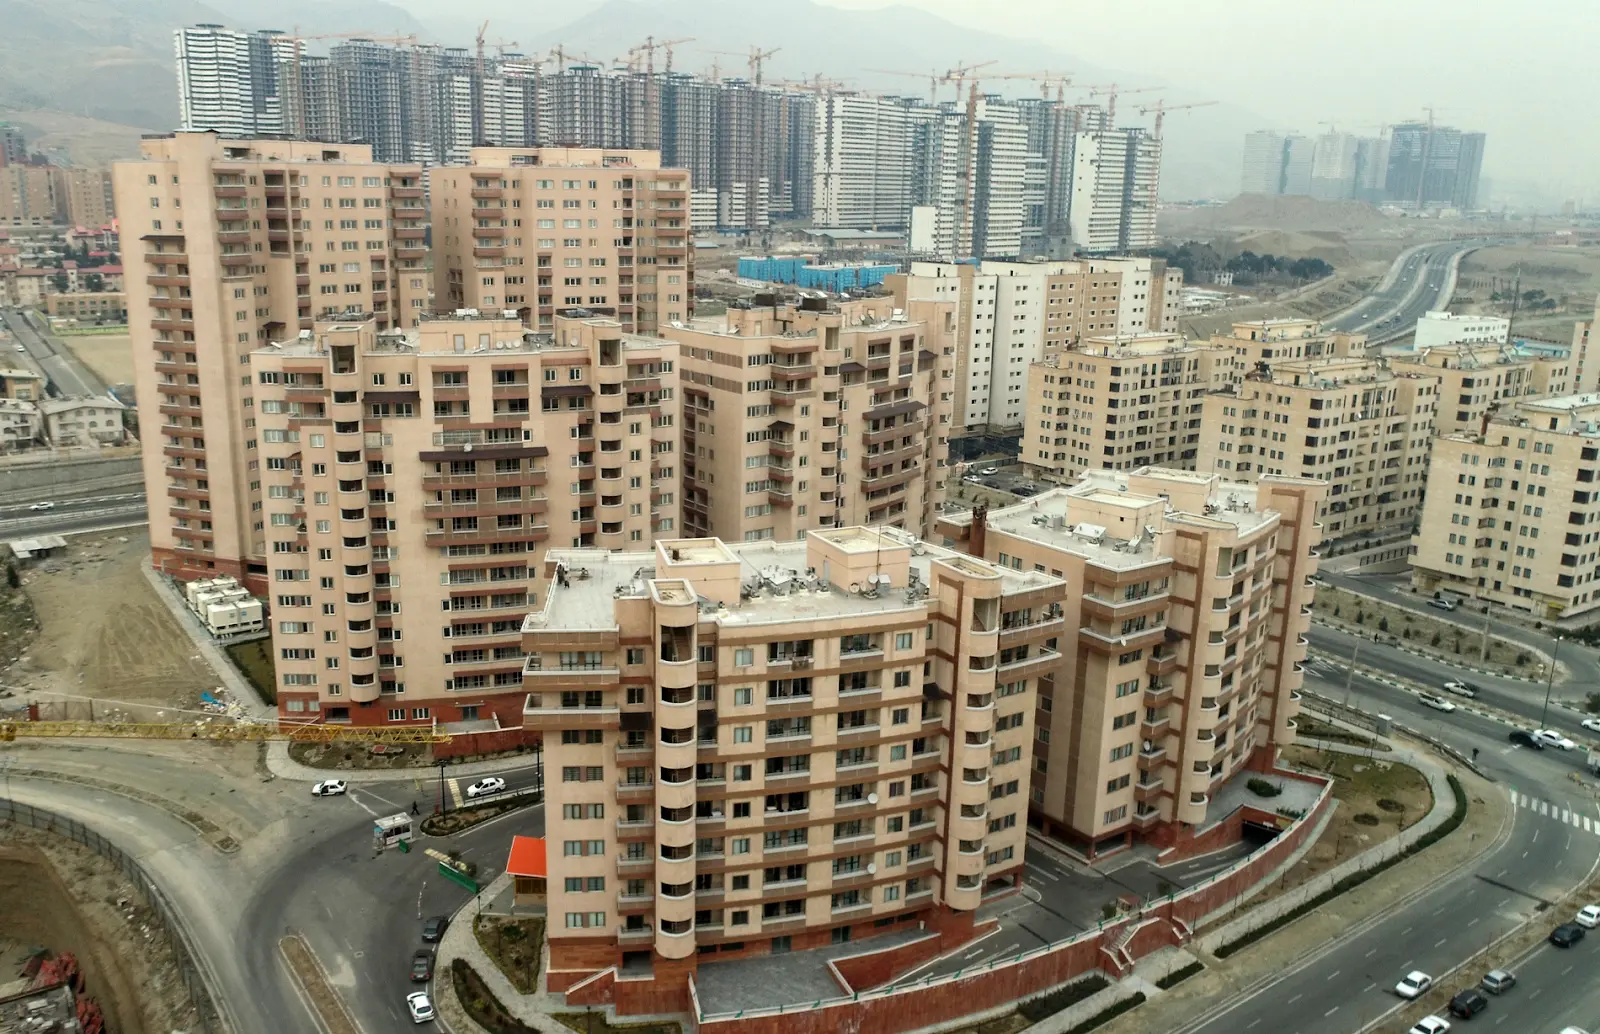 ۲۰۰ هزار خانه خالی به بازار مسکن عرضه شد